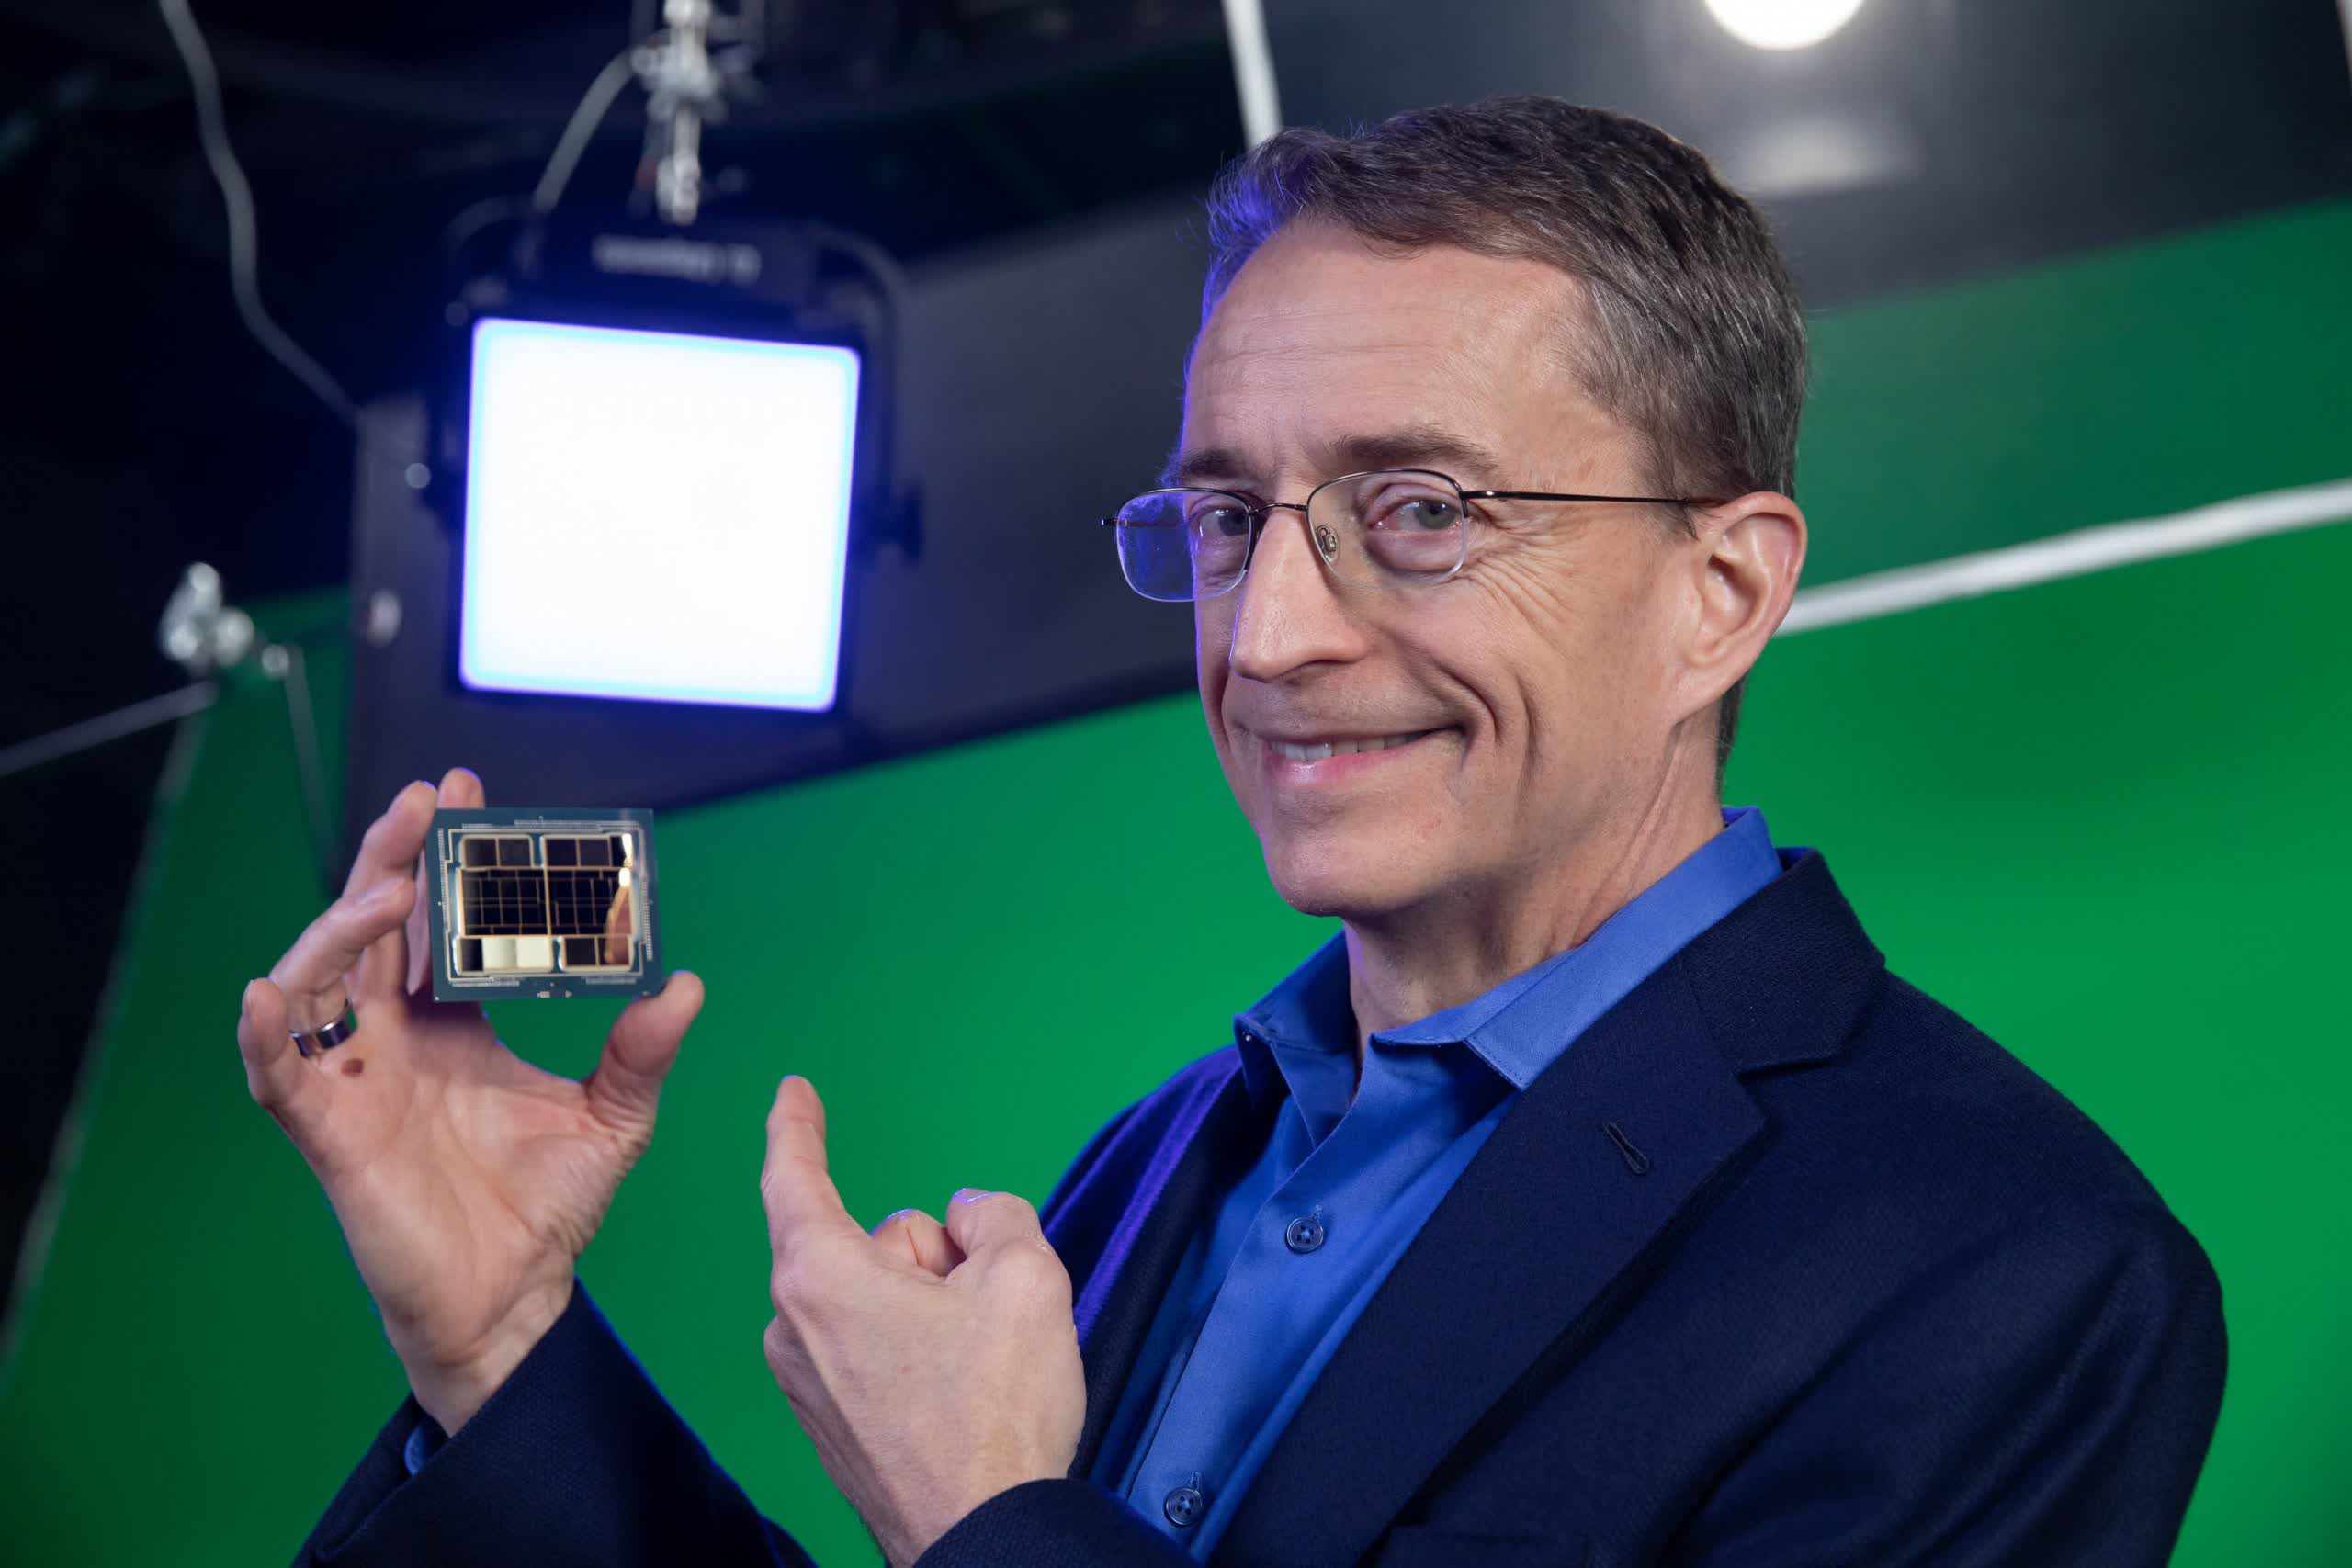 Intel CEO Pat Gelsinger announces “Intel is abet”